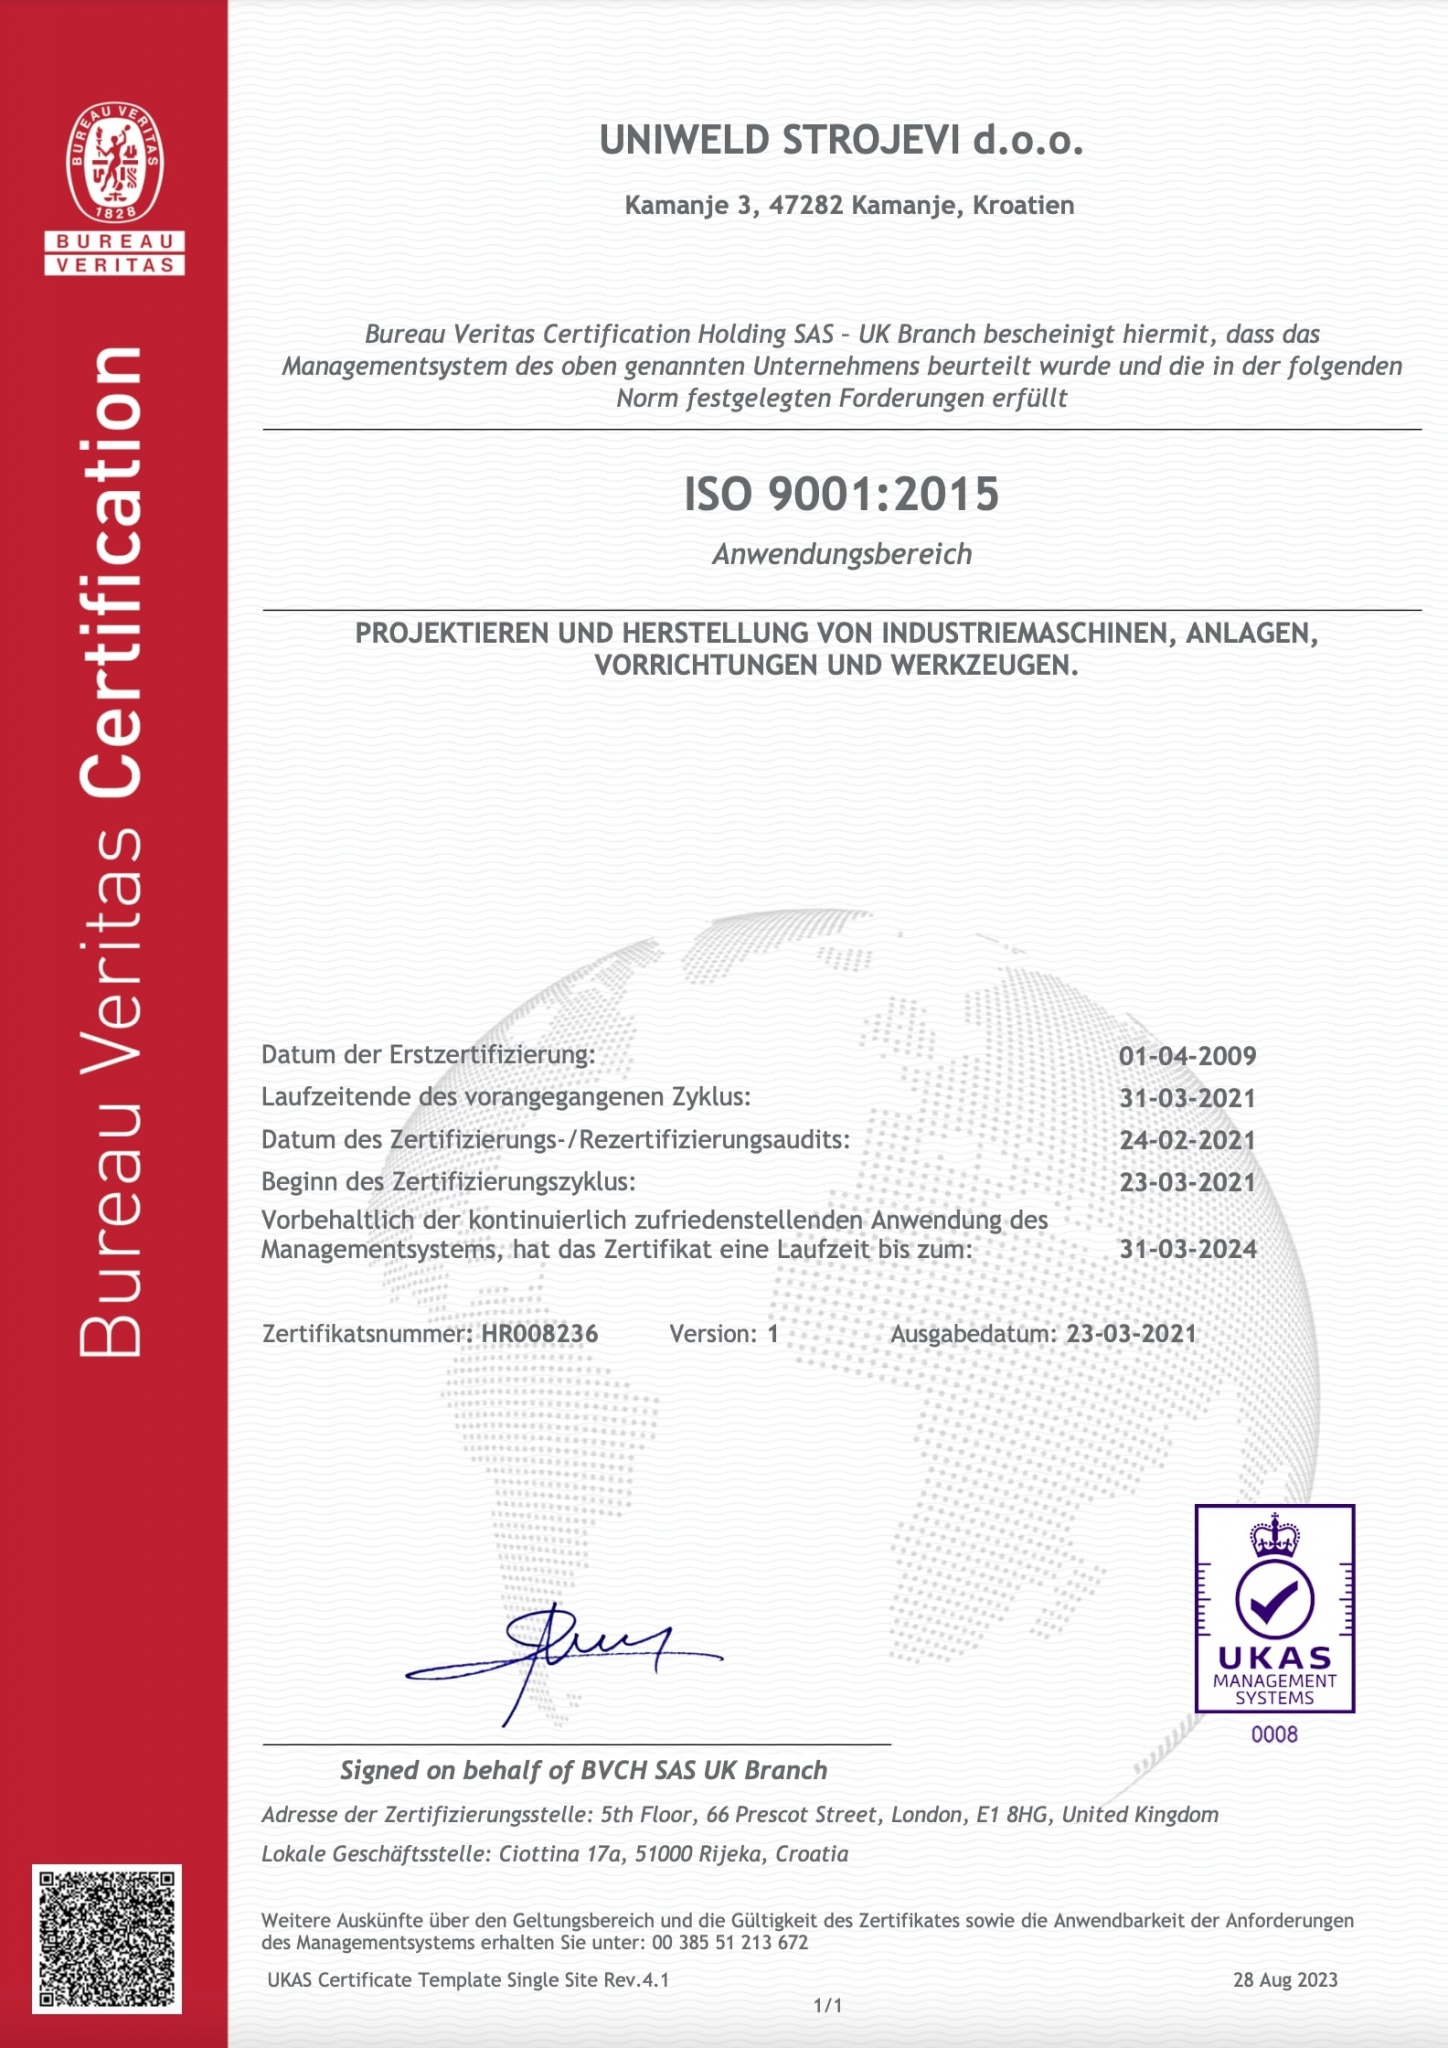 Certifikat_BV_ISO 9001_2015_DEU-1